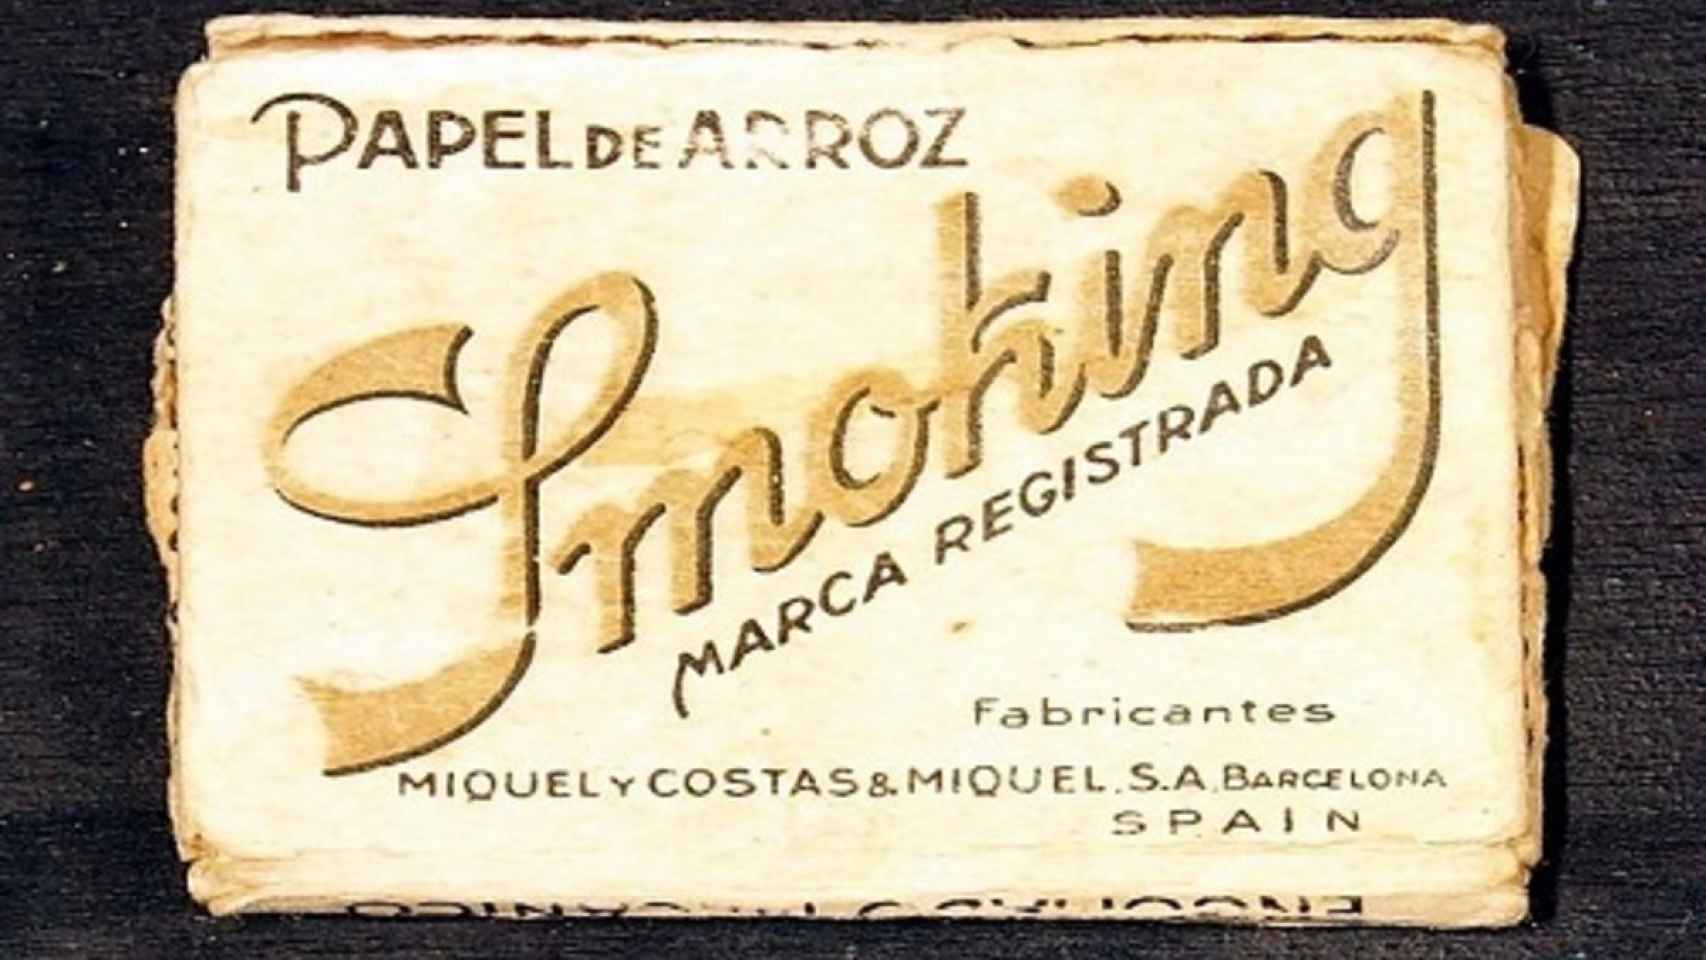 Antiguo embalaje de papel de fumar elaborado por Miquel y Costas.